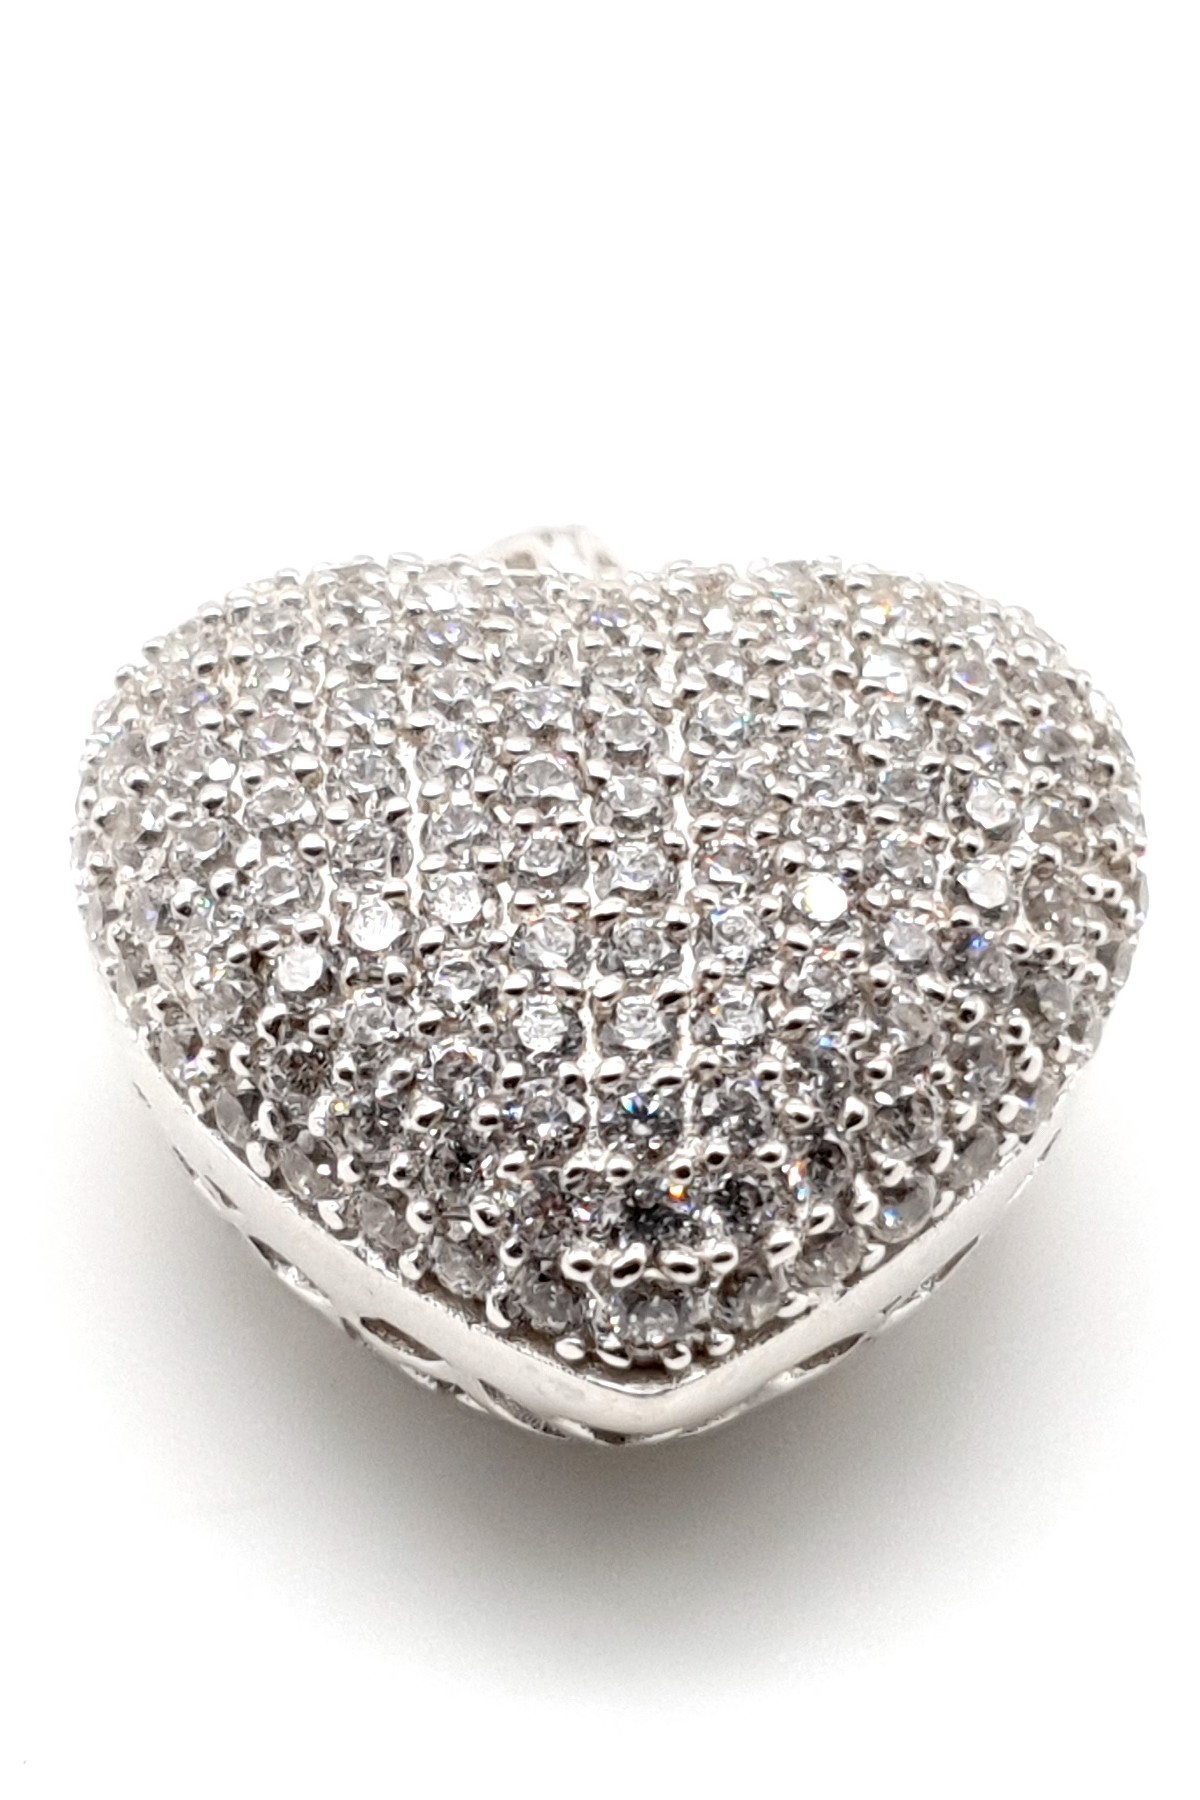 Statement romantický náhrdelník ve tvaru srdce